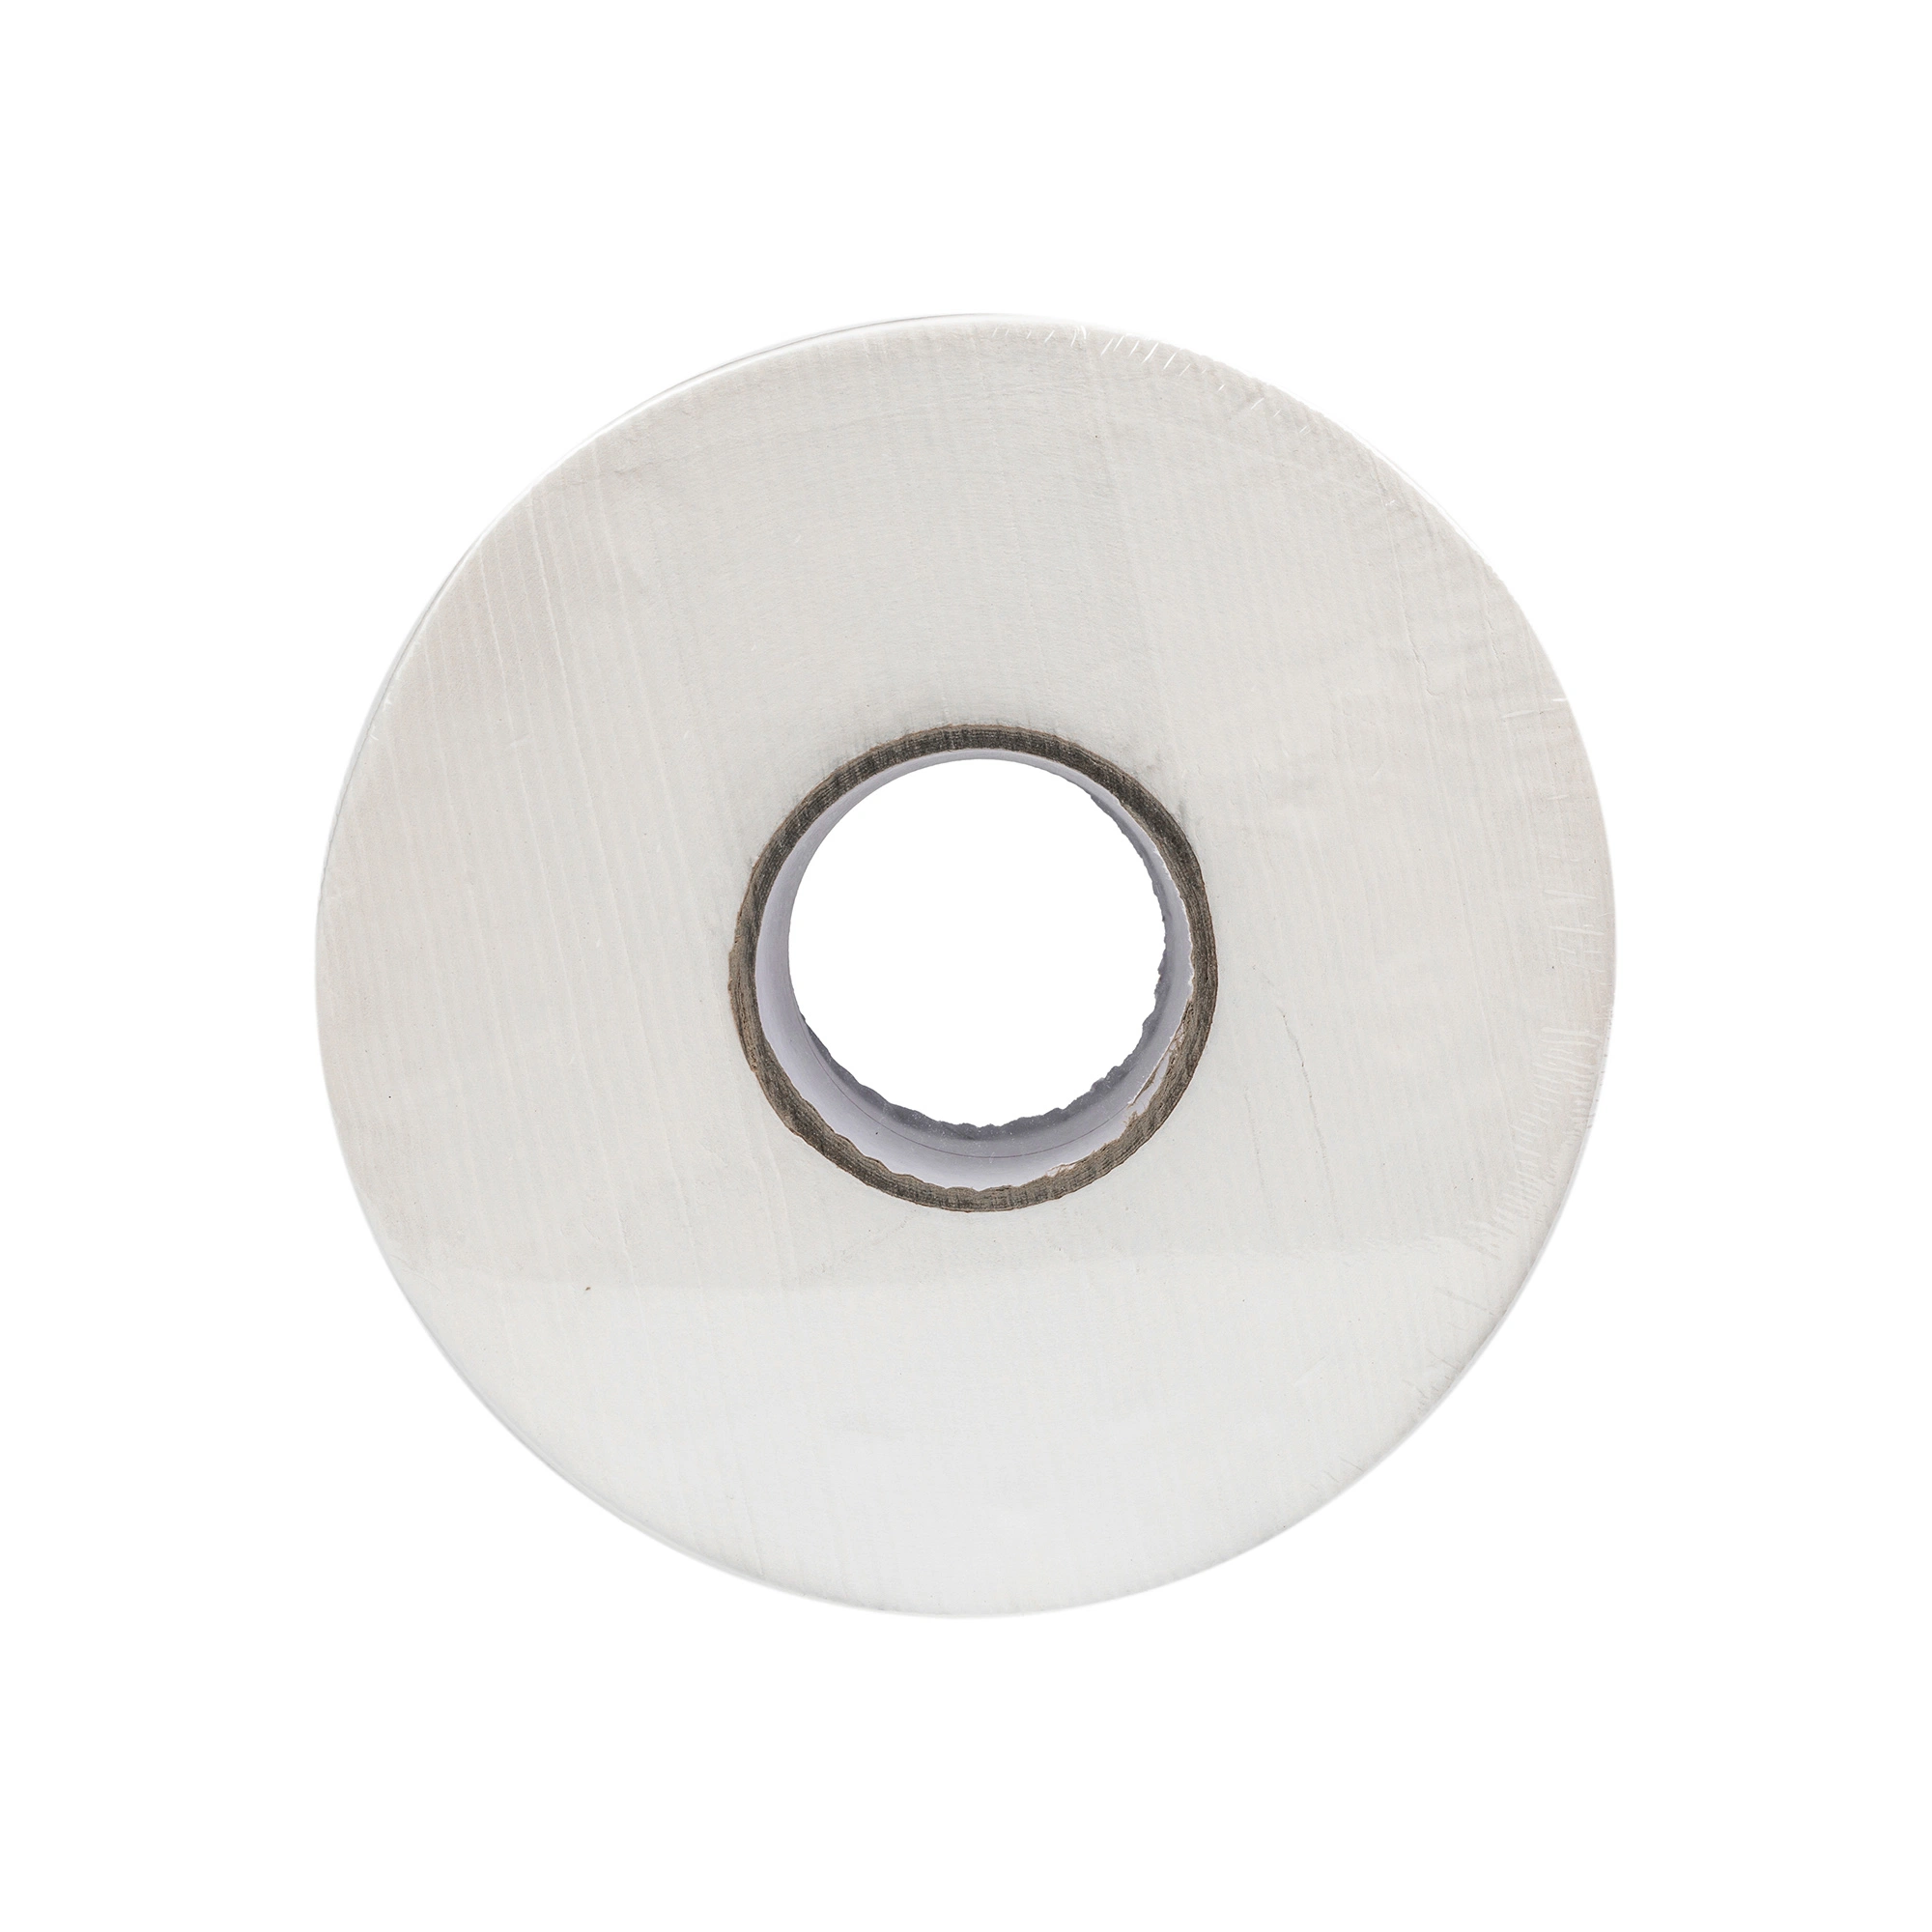 ورق Maxi Roll Roll Tissue Core الفاخر الطري في المرحاض العام